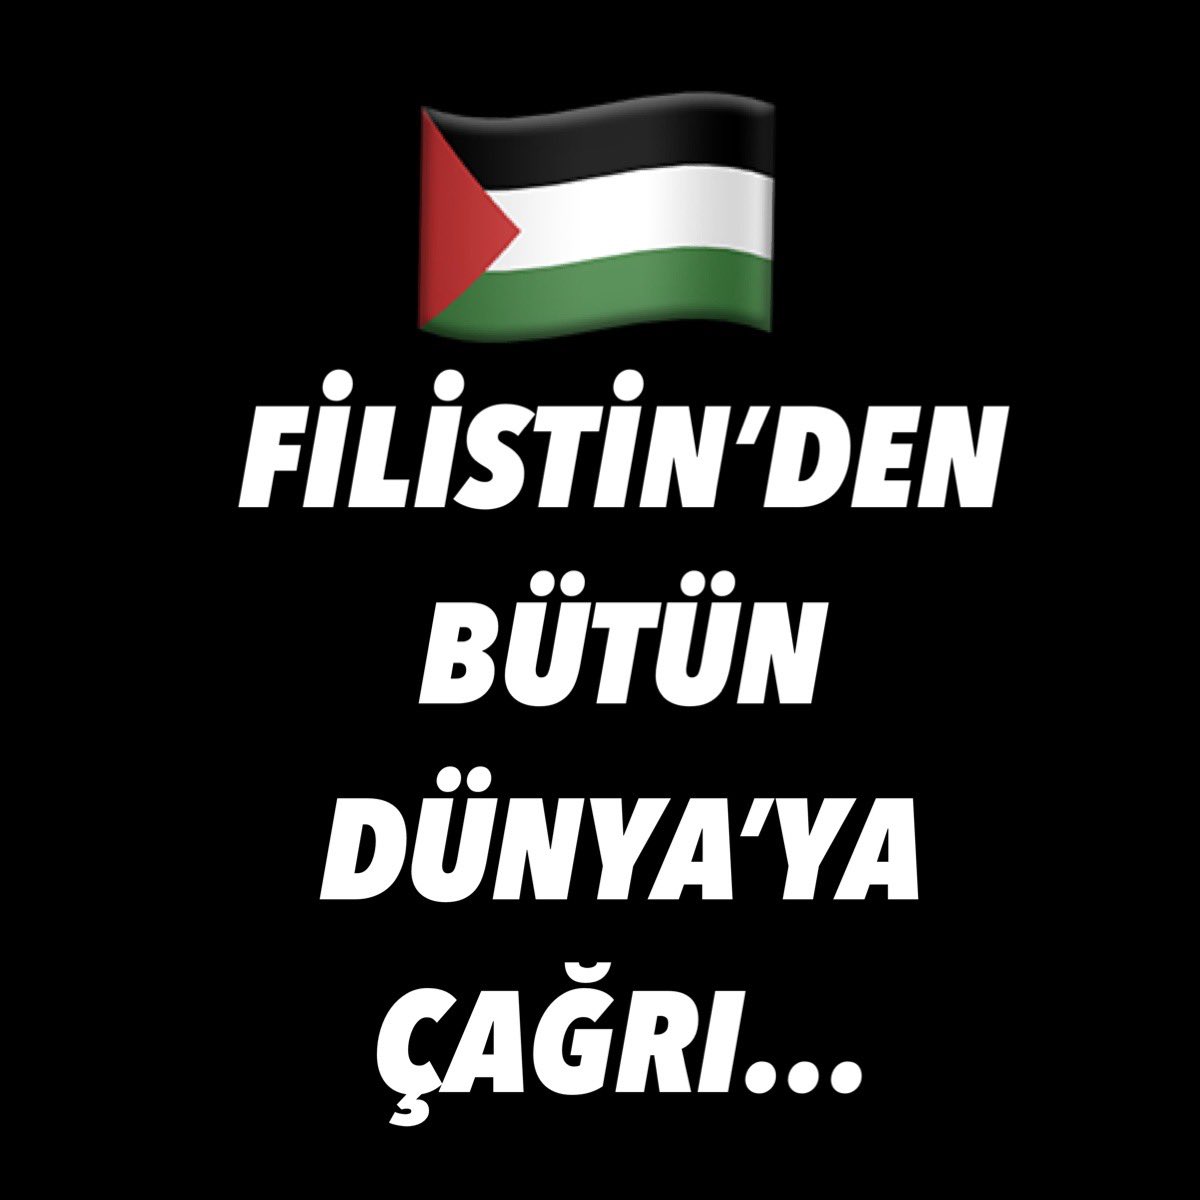 🇵🇸🇵🇸🇵🇸🇵🇸🇵🇸🇵🇸🇵🇸 Filistin halkının müslim ve gayri müslim bütün insanlık alemine çağrısıdır. 🇵🇸🇵🇸🇵🇸🇵🇸🇵🇸🇵🇸🇵🇸🇵🇸 Sizden para istemiyoruz. Sizden bilhassa bu mesajı okumanızı ve onu paylaşmanızı istiyoruz. 🍒🍒🍒🍒🍒🍒🍒🍒 Filistin halkına yardım etmek için bu yahudi-Amerikan